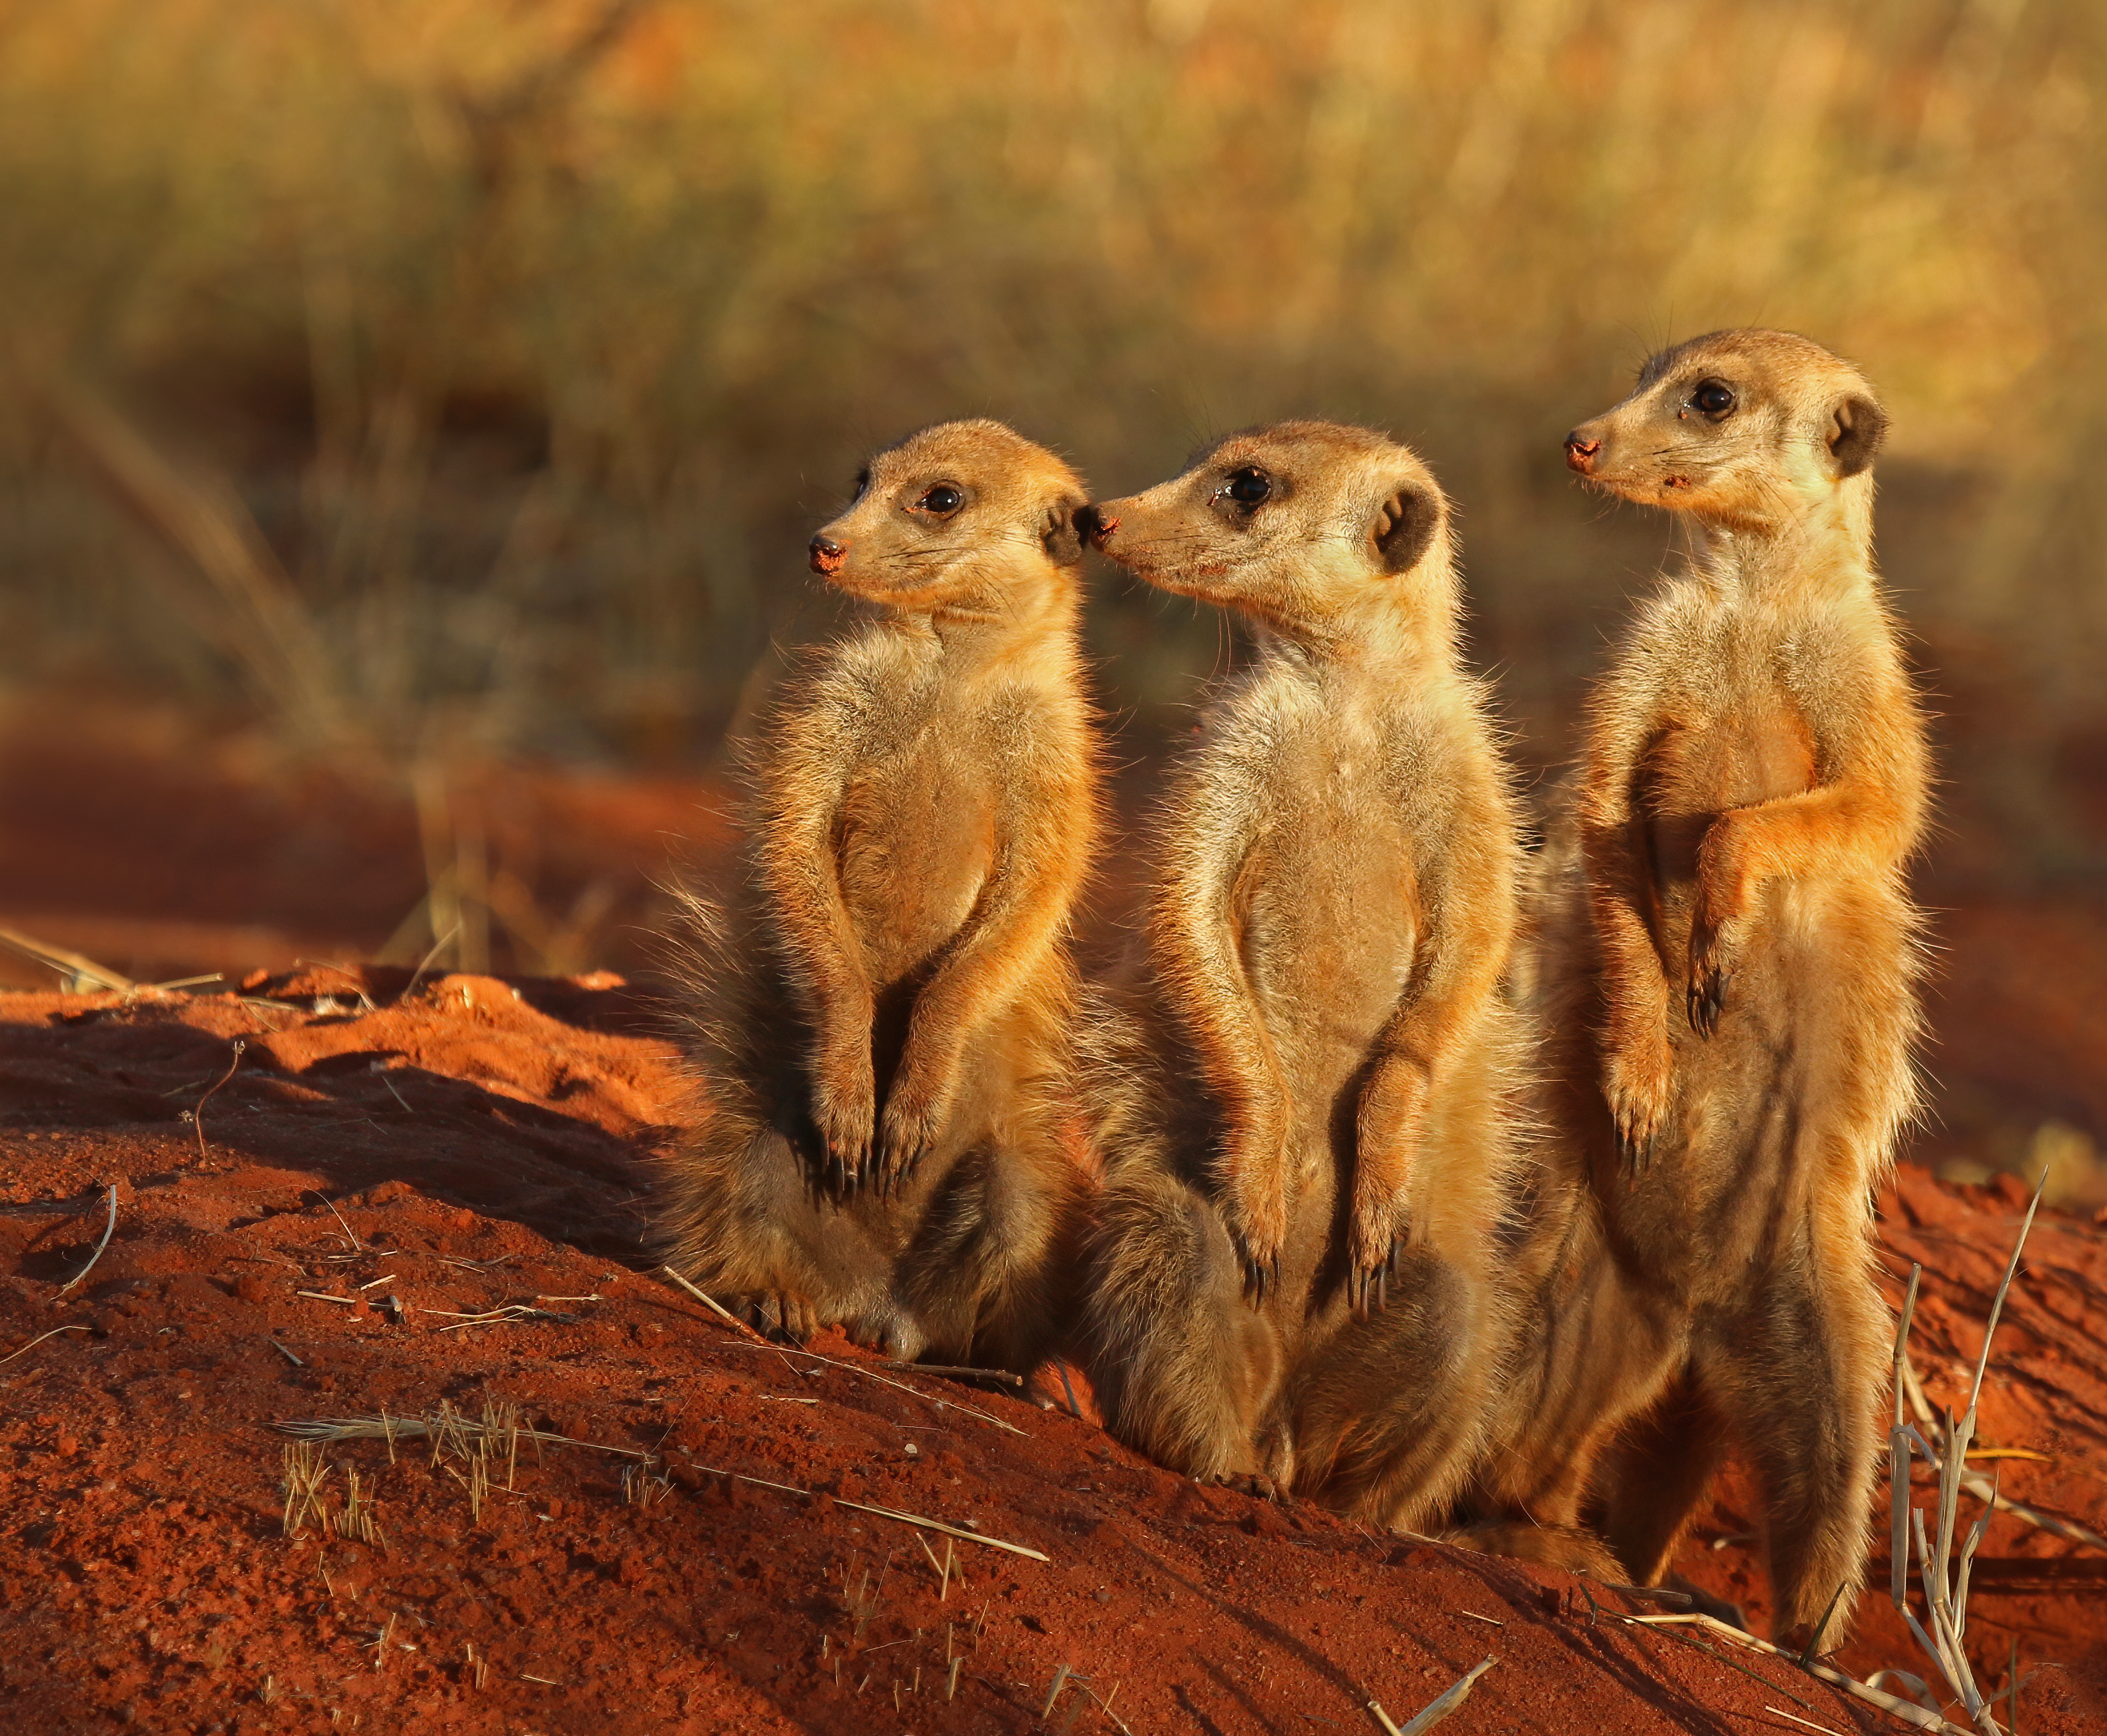 Where do meerkats live?